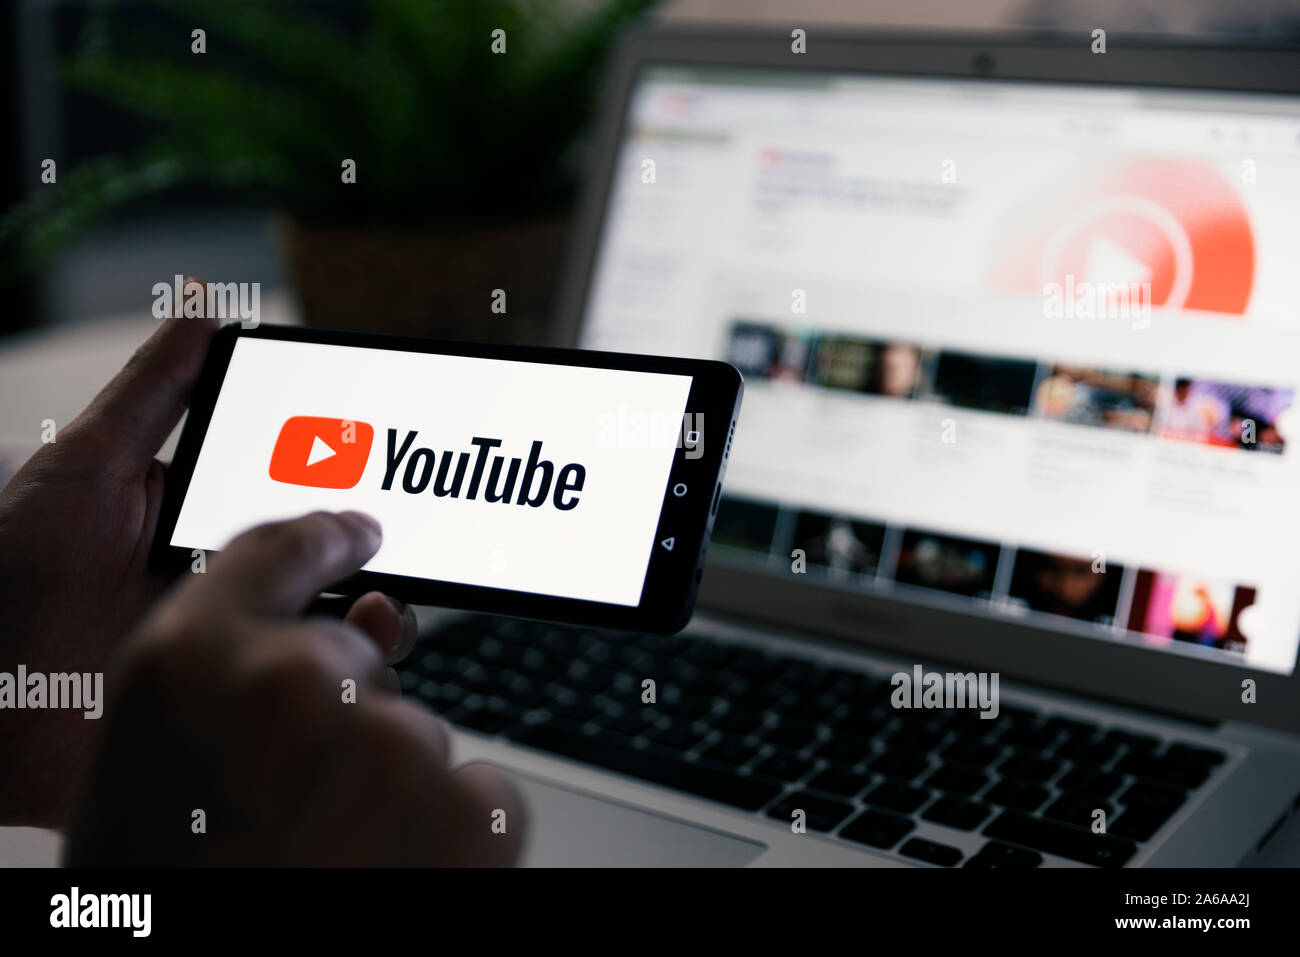 Wroclaw, Polonia - Ott 23, 2019: Uomo con smart phone con il logo YouTube sullo schermo. YouTube è il più popolare servizio di video sviluppato da Google. Foto Stock